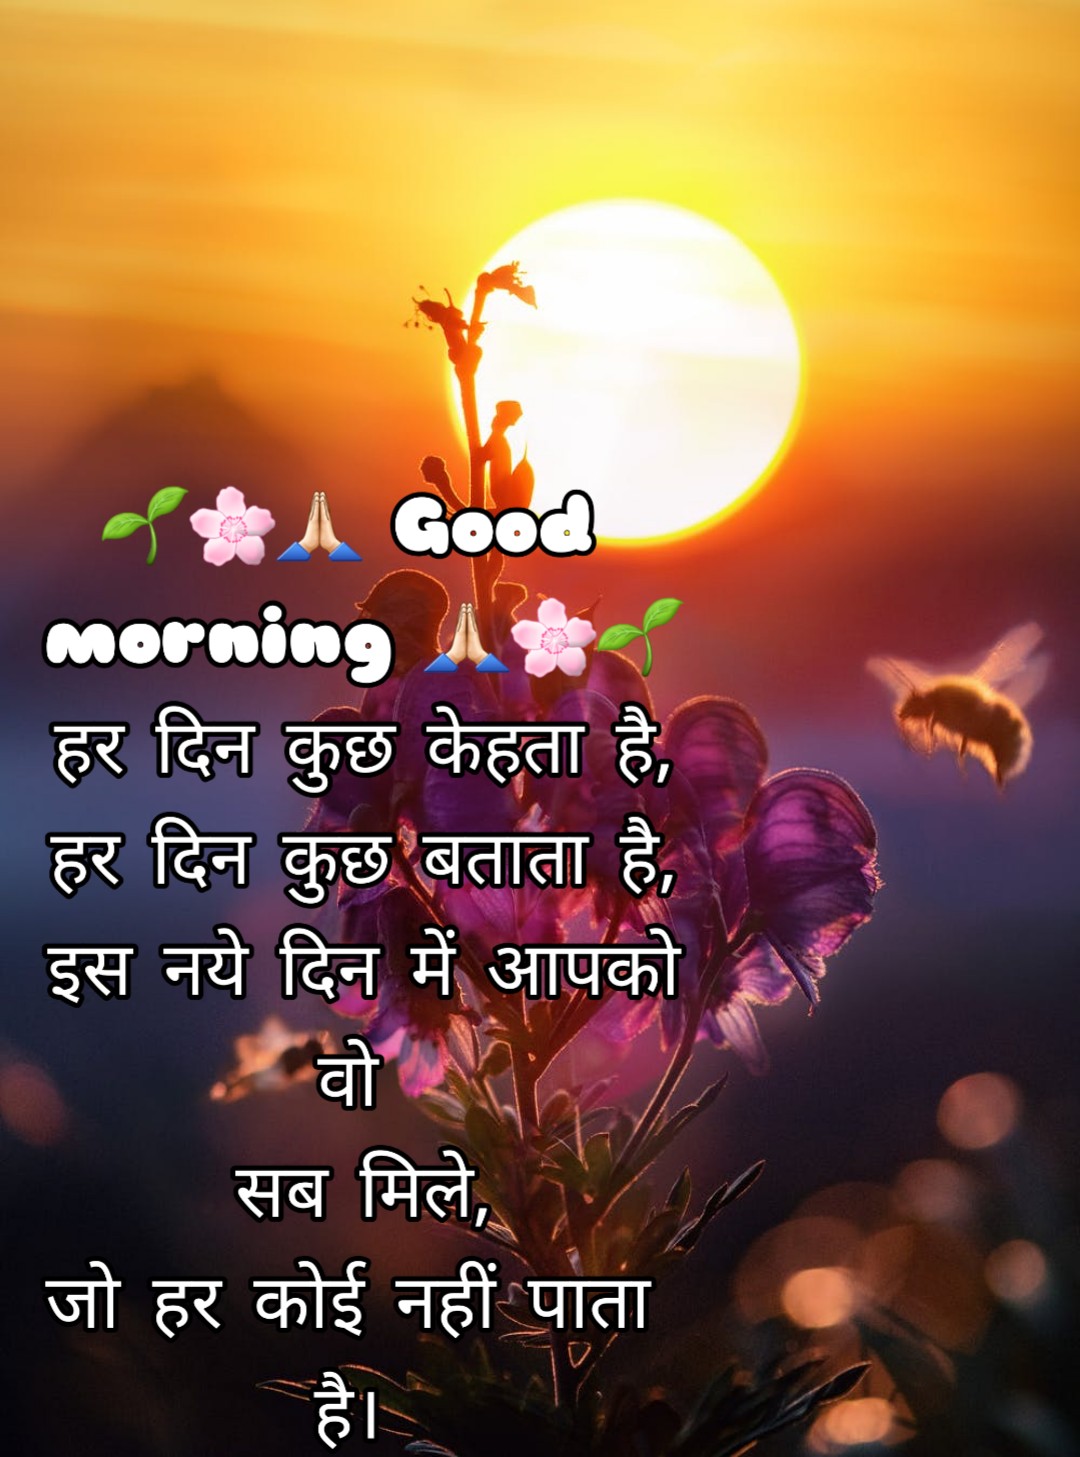 Good morning image in hindi sayari